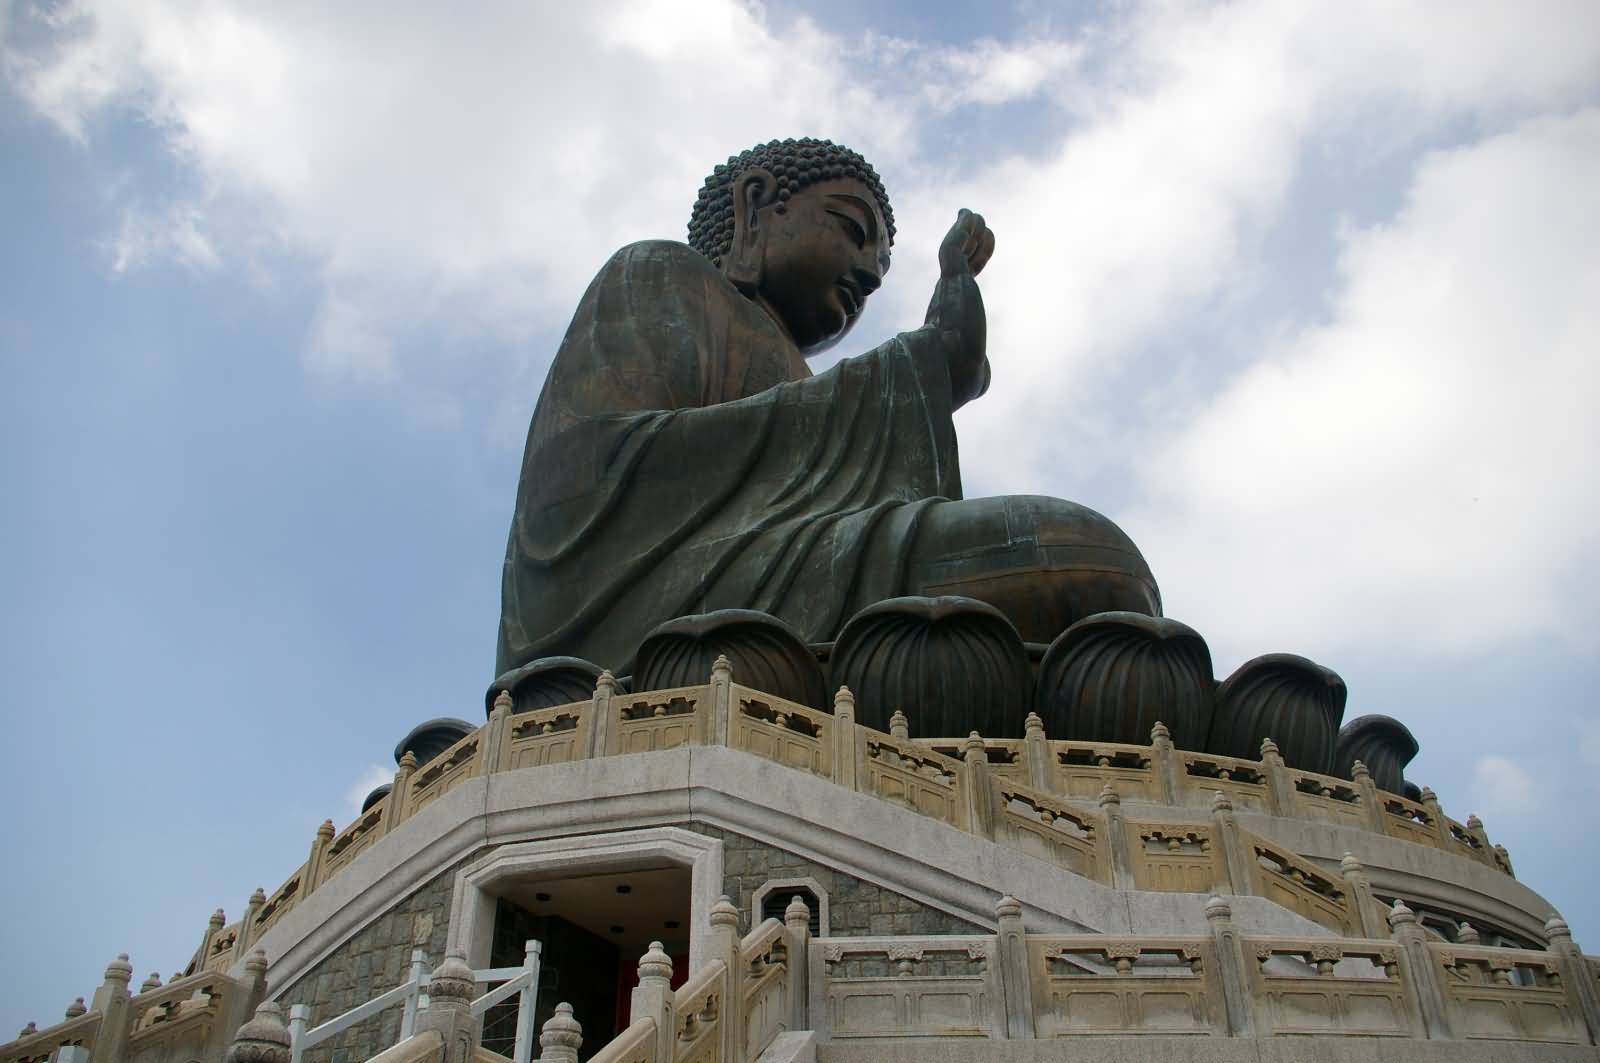 Tian Tan Buddha Statue View From Below